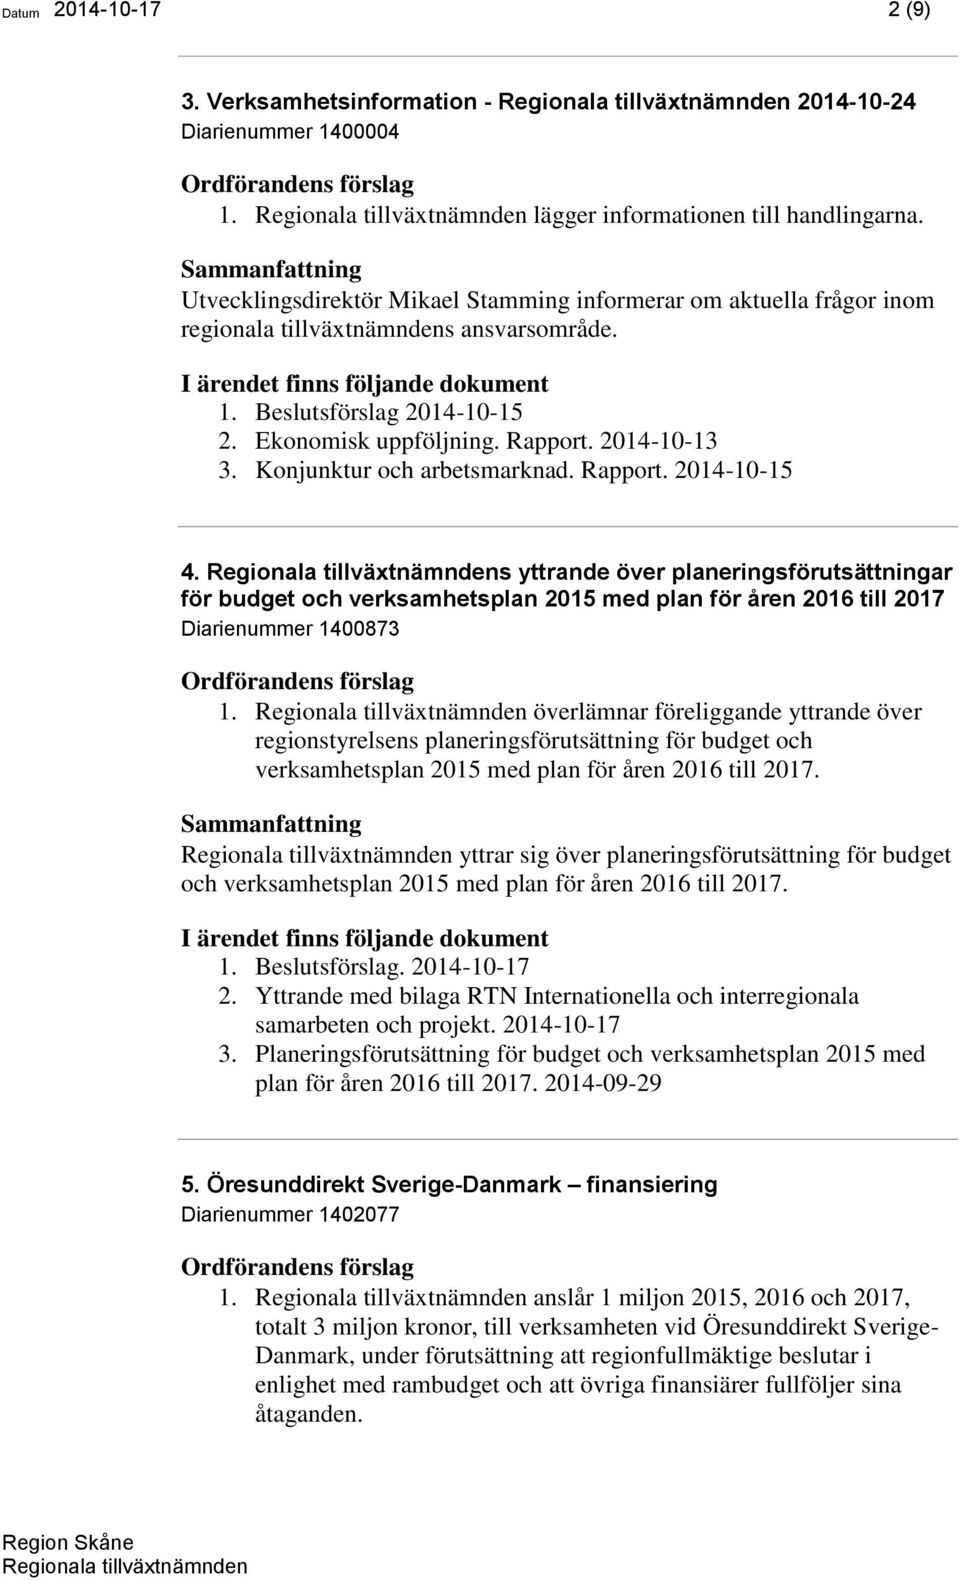 Konjunktur och arbetsmarknad. Rapport. 2014-10-15 4. s yttrande över planeringsförutsättningar för budget och verksamhetsplan 2015 med plan för åren 2016 till 2017 Diarienummer 1400873 1.